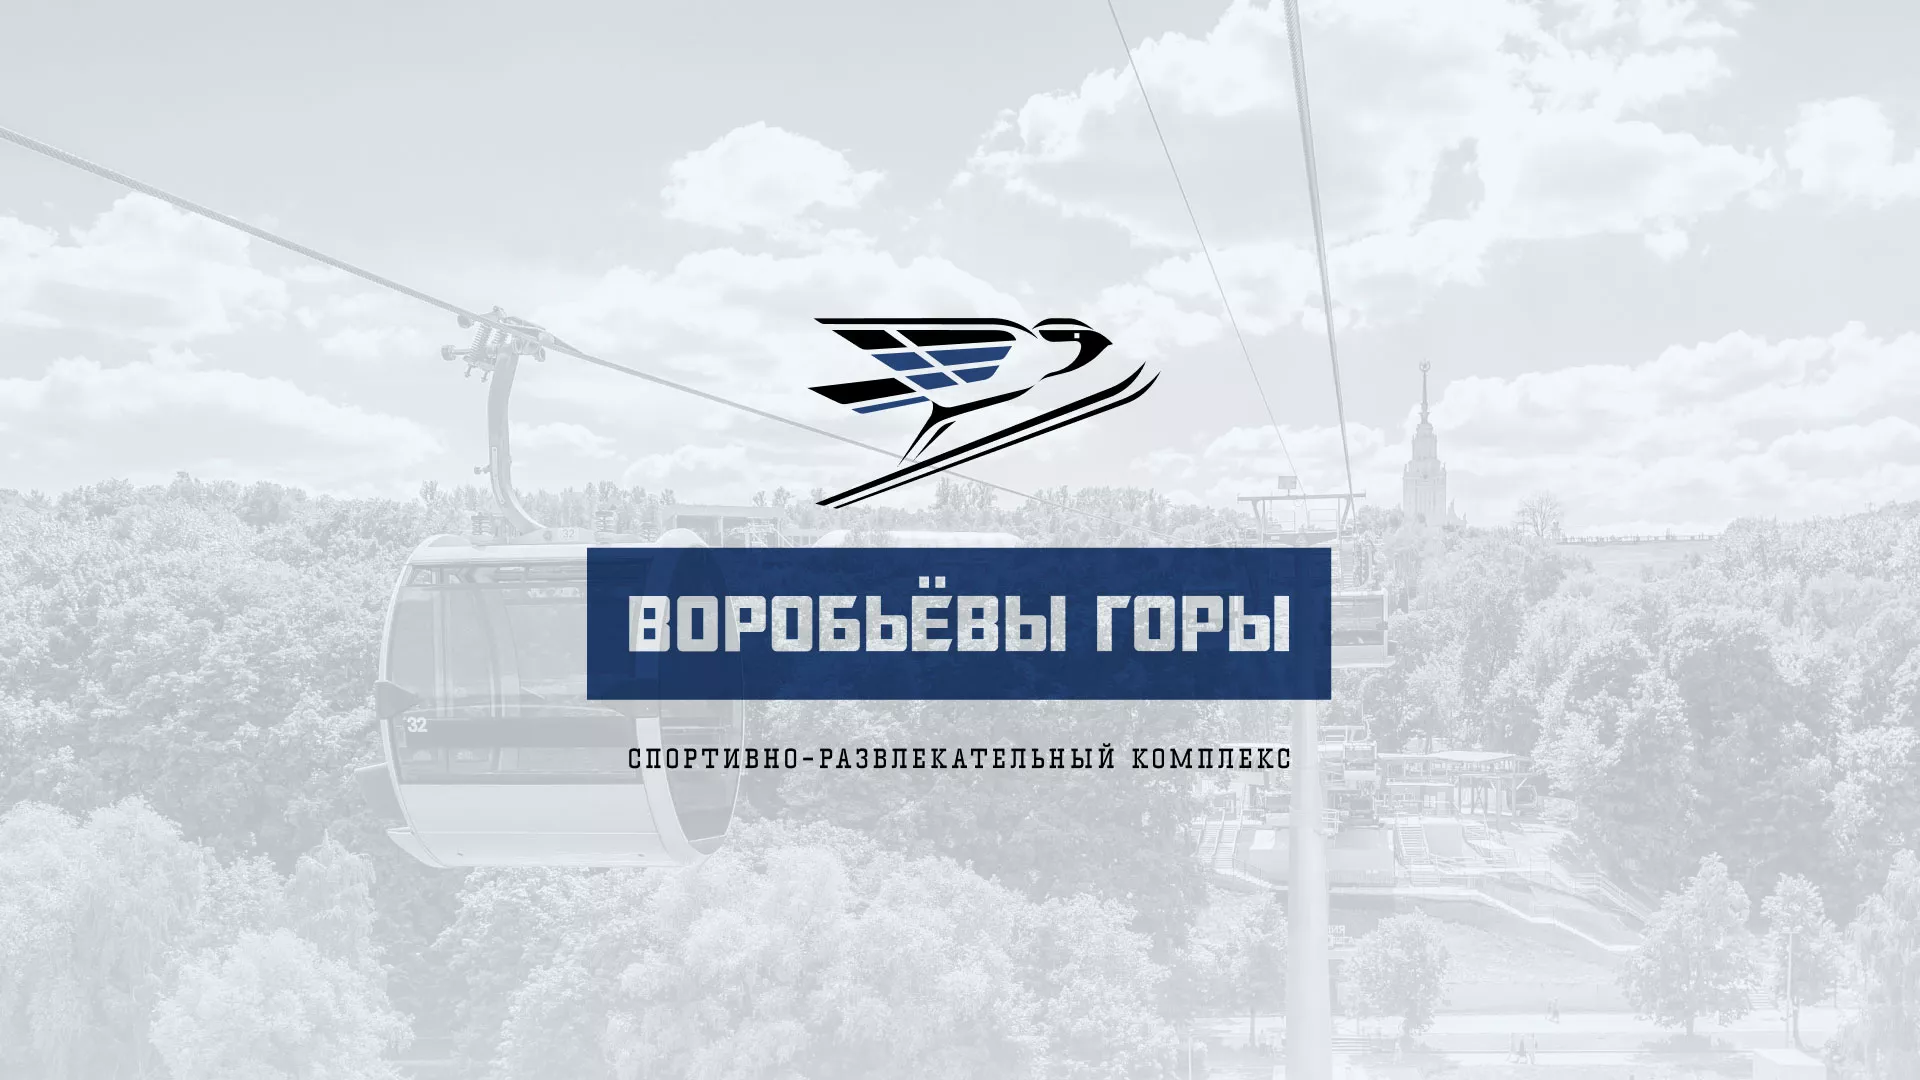 Разработка сайта в Щербинке для спортивно-развлекательного комплекса «Воробьёвы горы»